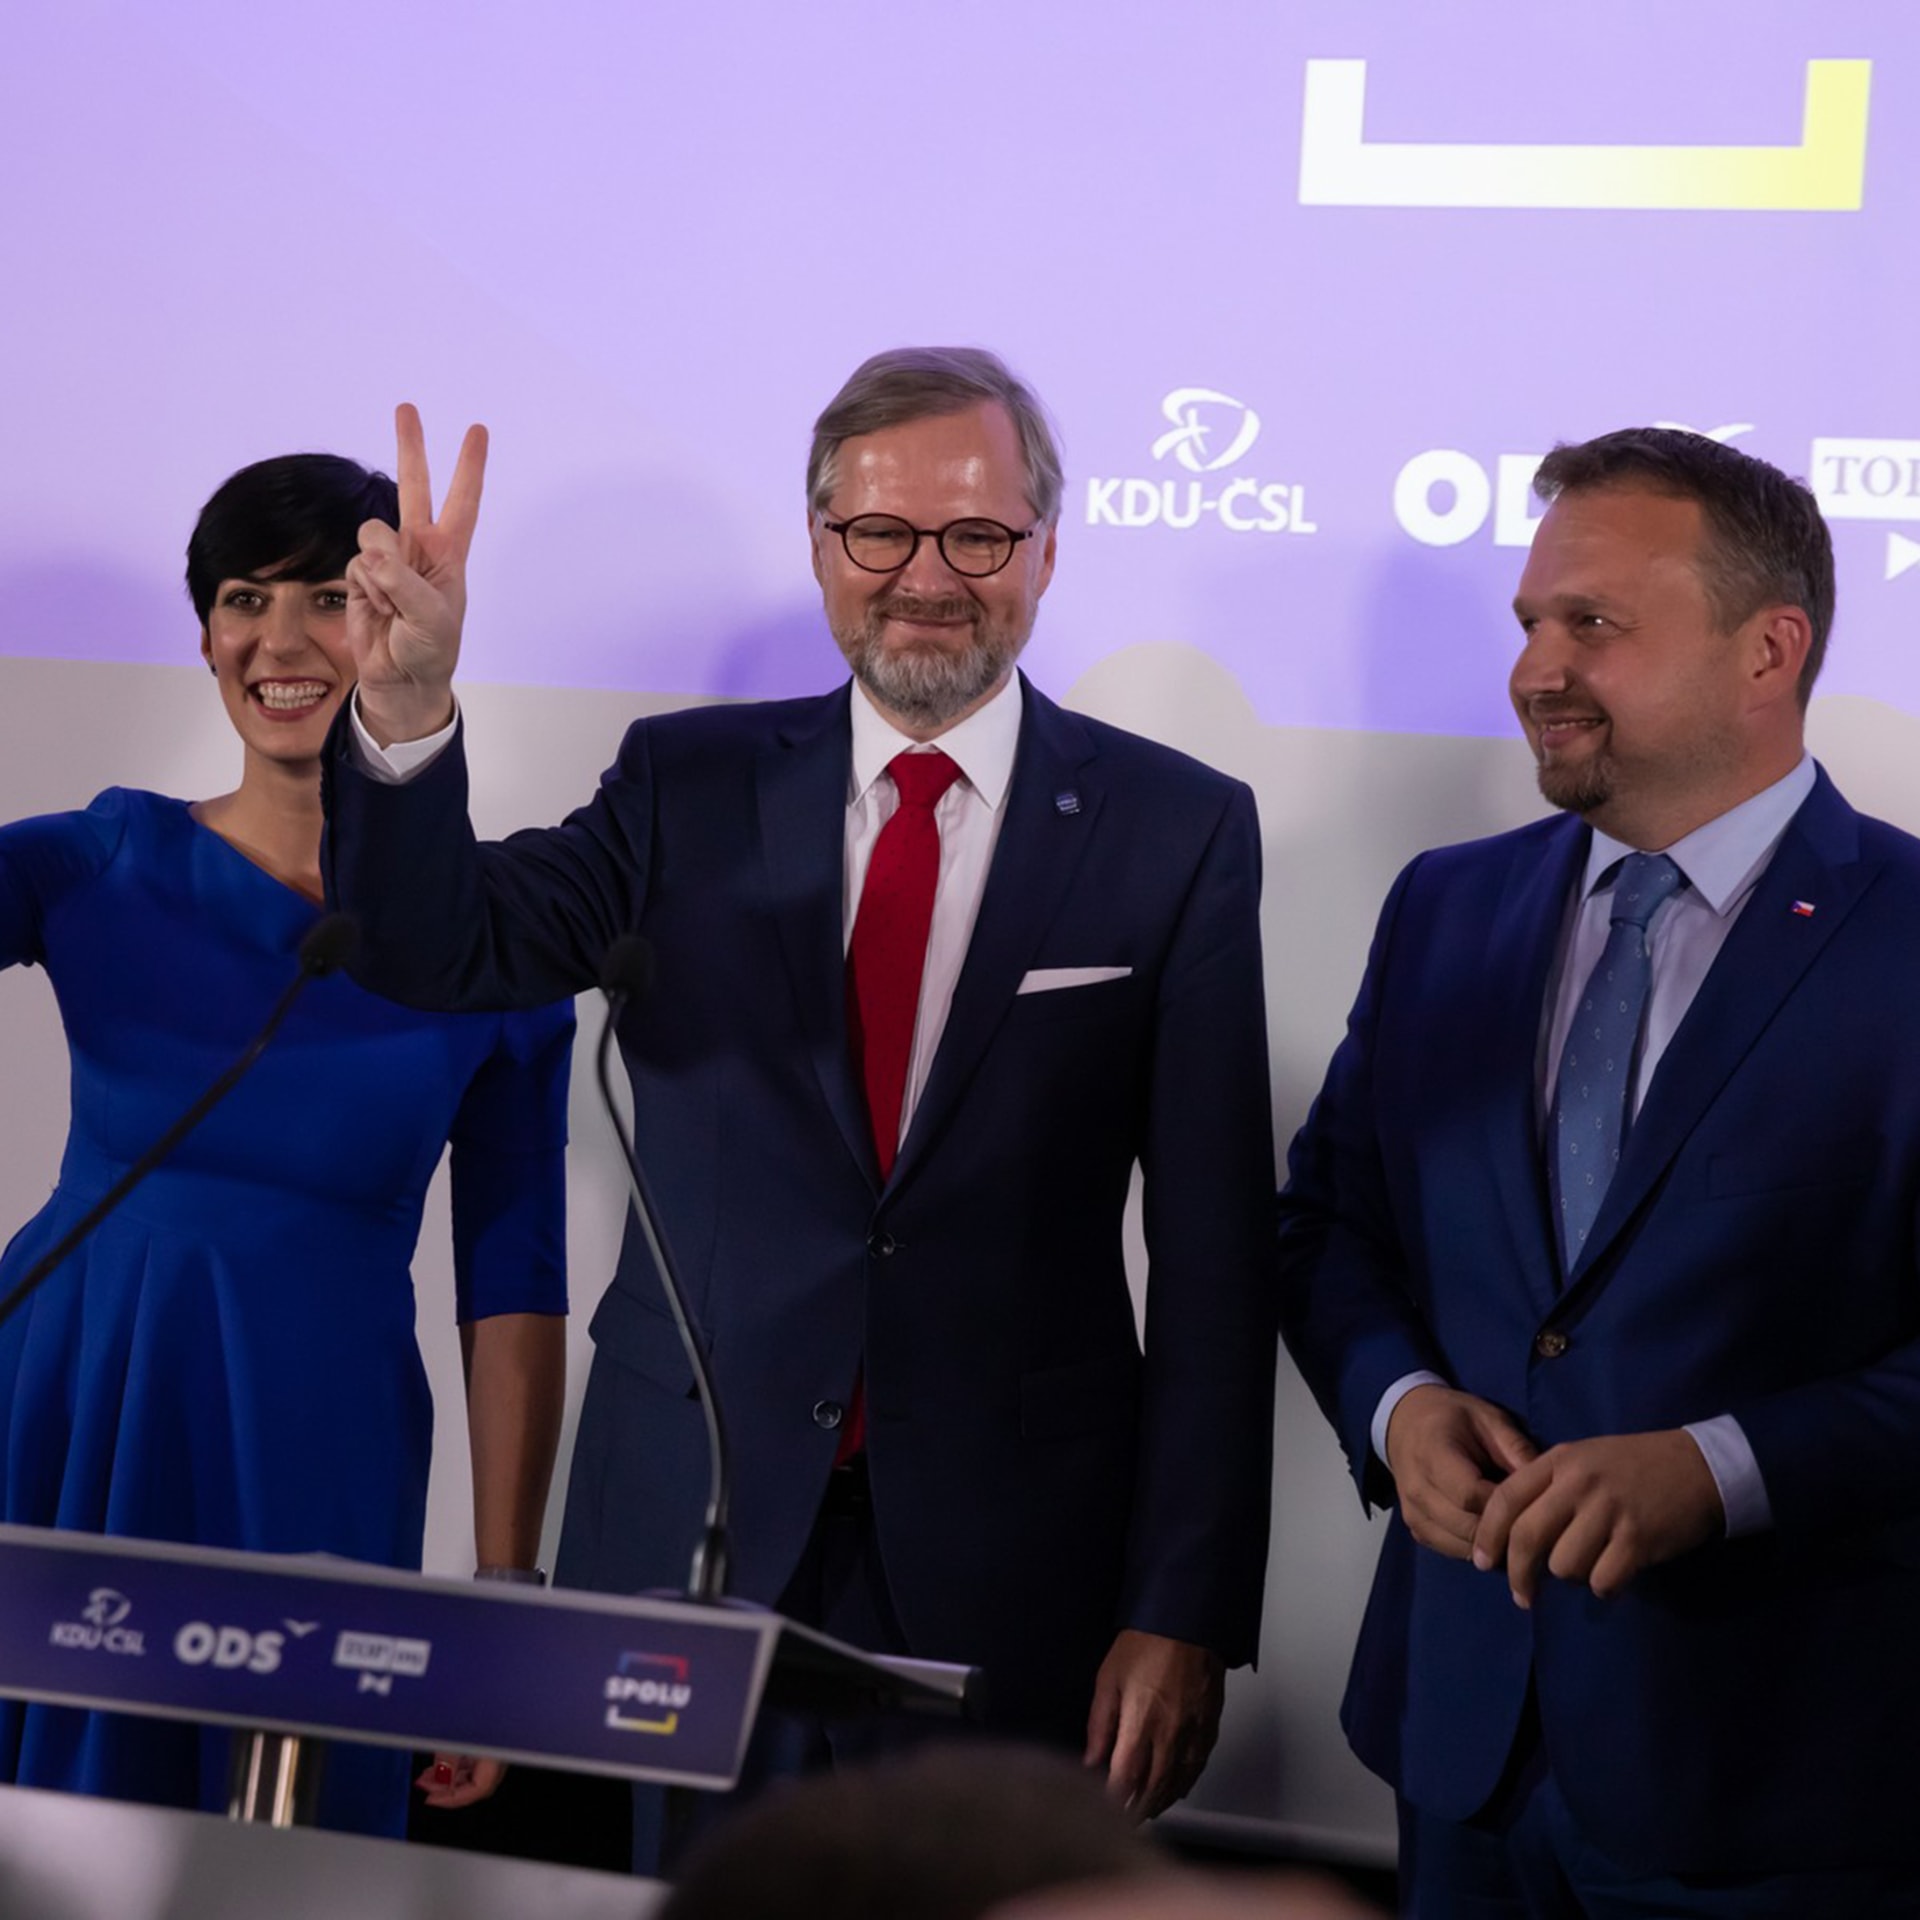 Druhý říjnový víkend se uskutečnily volby do PS. Největší počet hlasů získala koalice Spolu složená z ODS, TOP 09 a KDU-ČSL